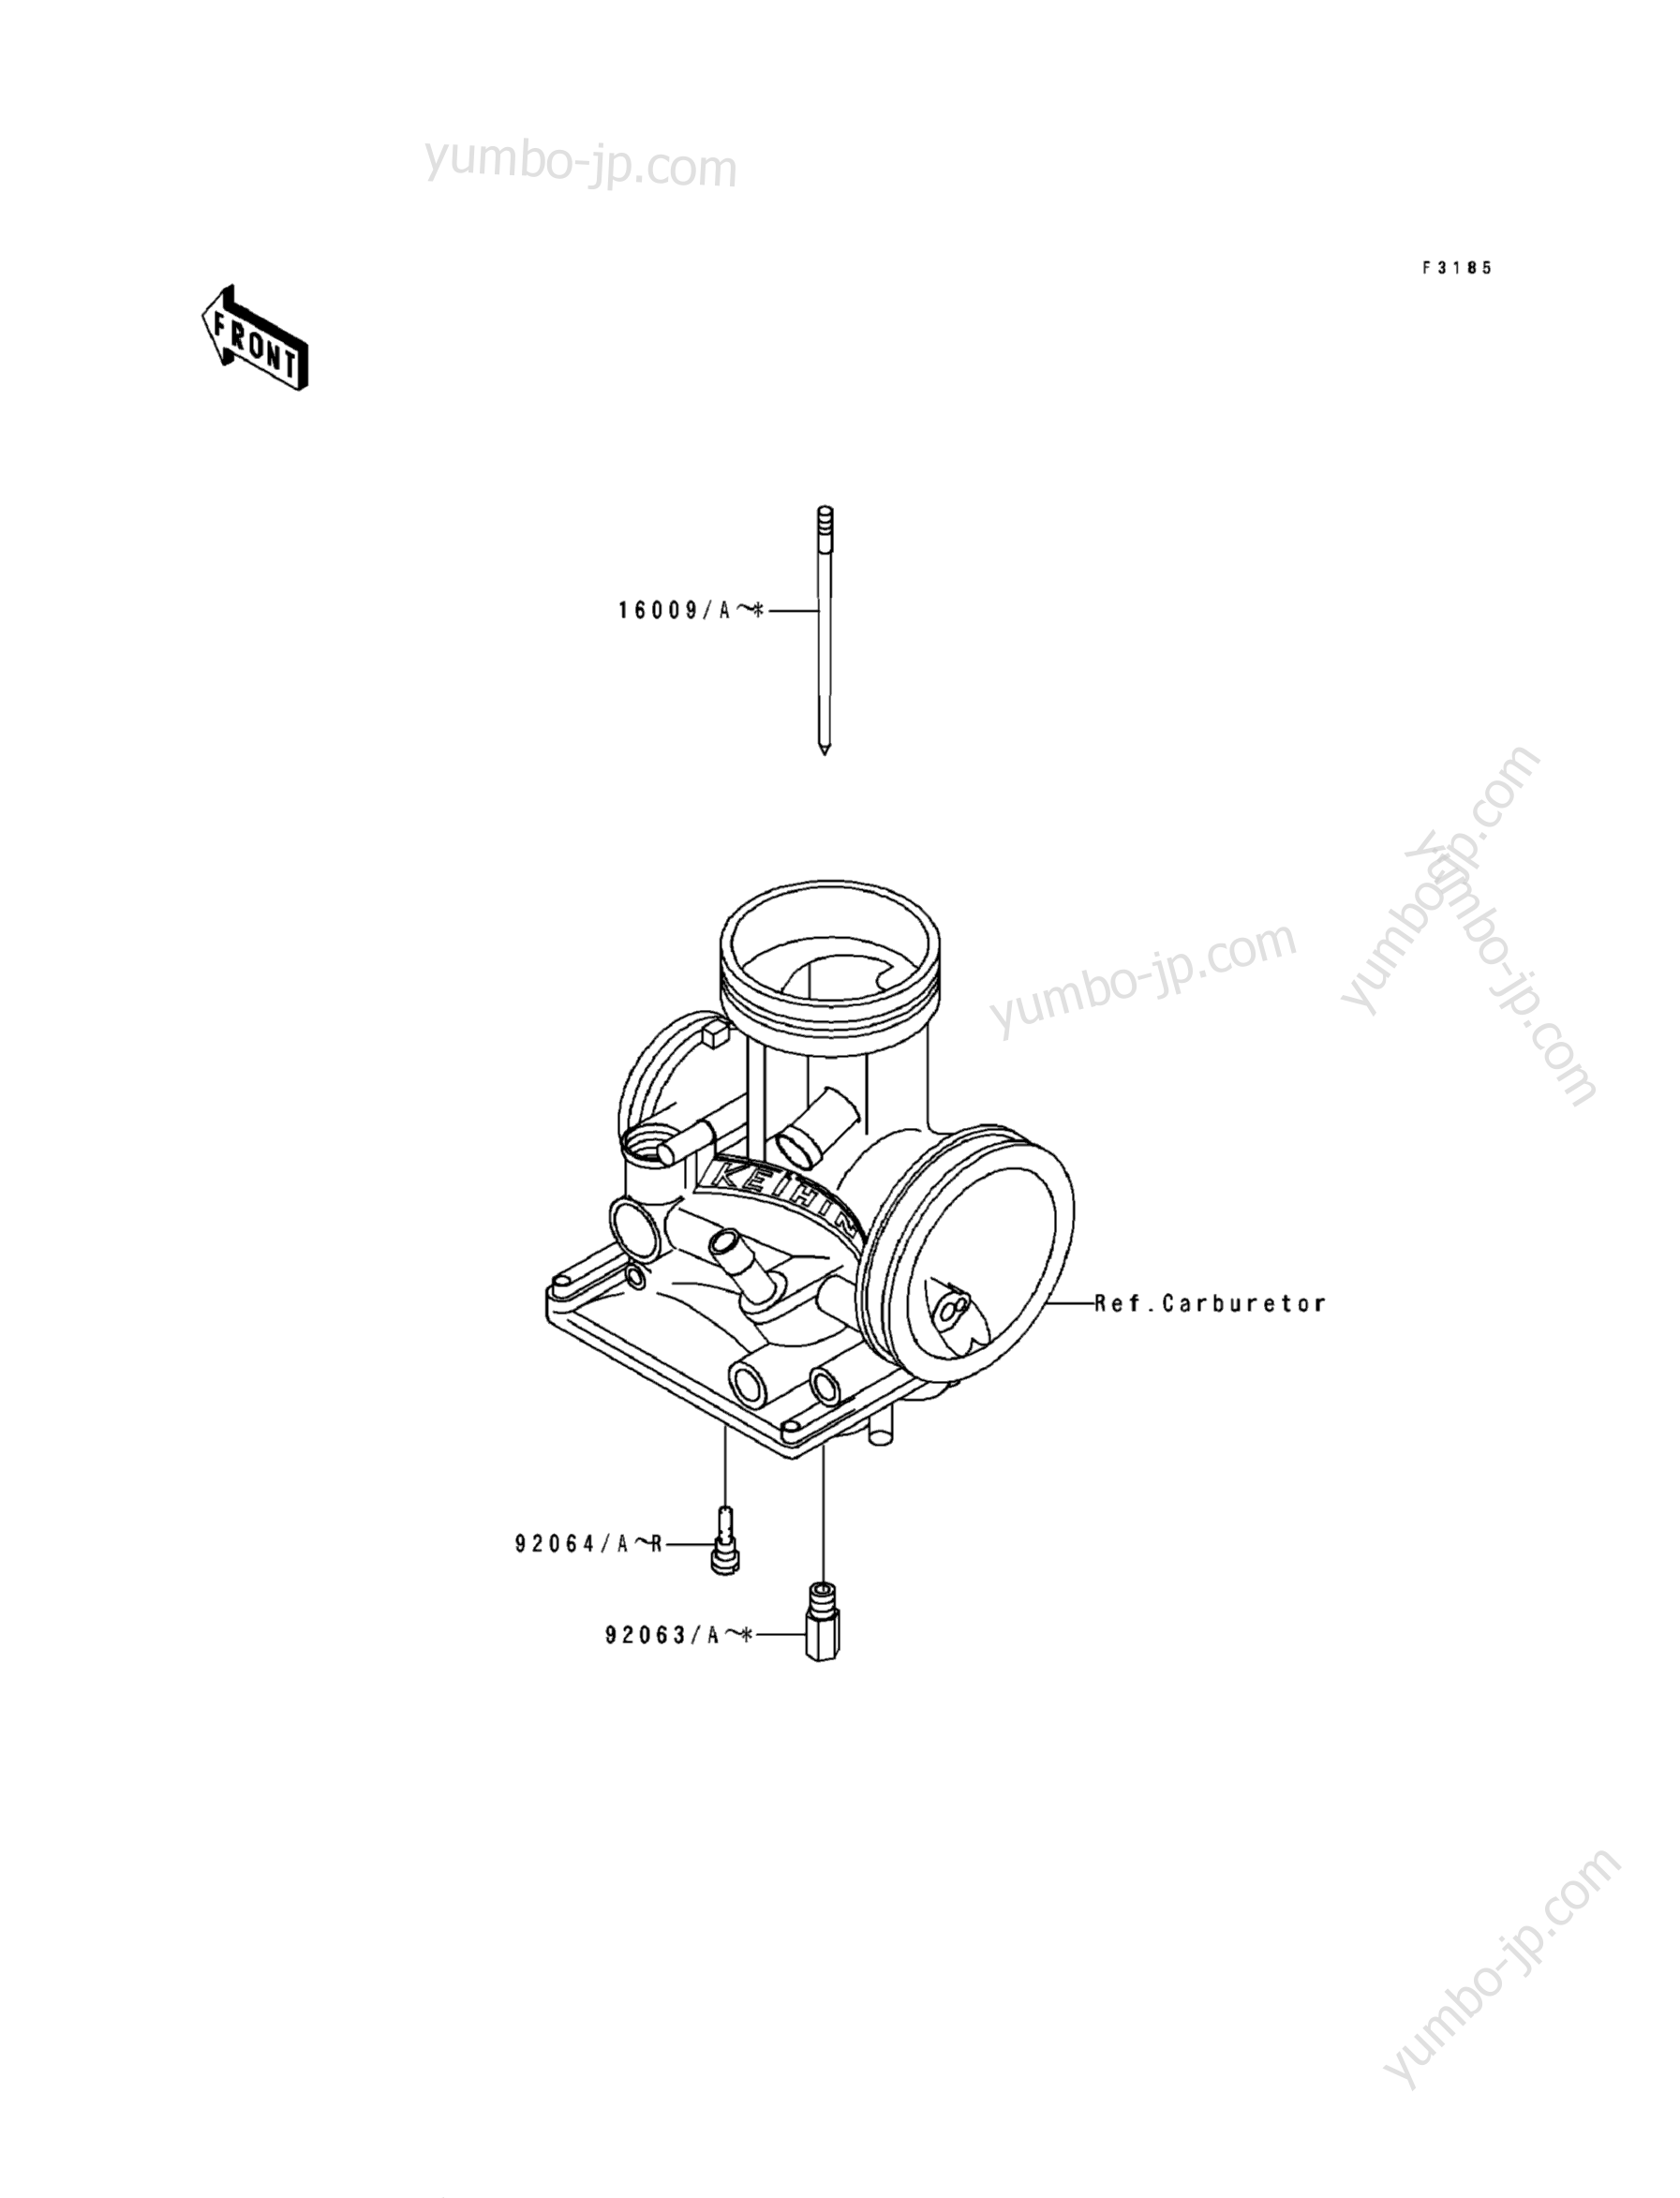 Optional Parts(3/4) for motorcycles KAWASAKI KX500 (KX500-E1) 1989 year